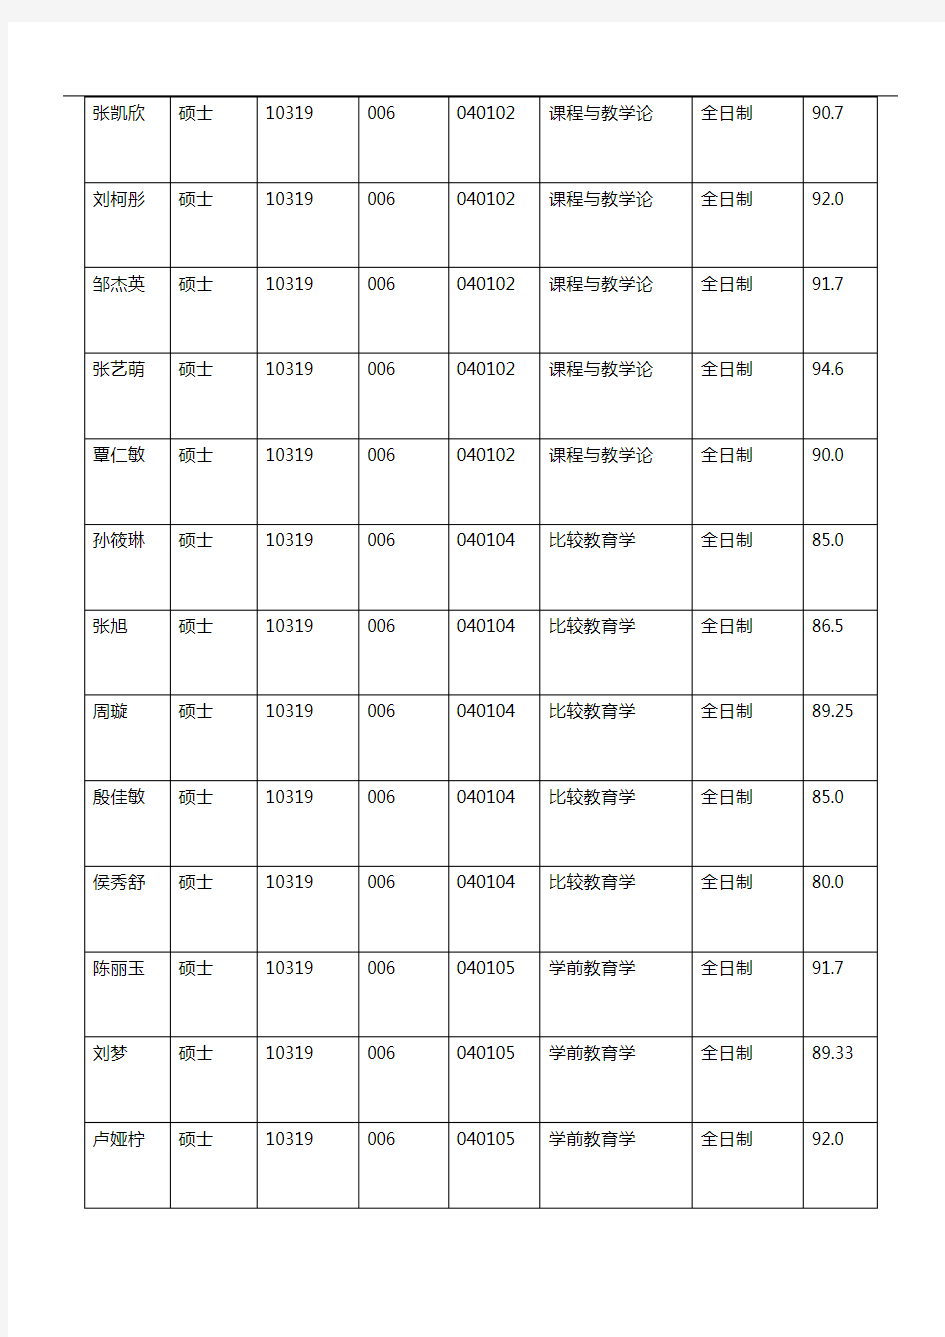 2019年南京师范大学教育科学学院硕士推免生录取名单公示